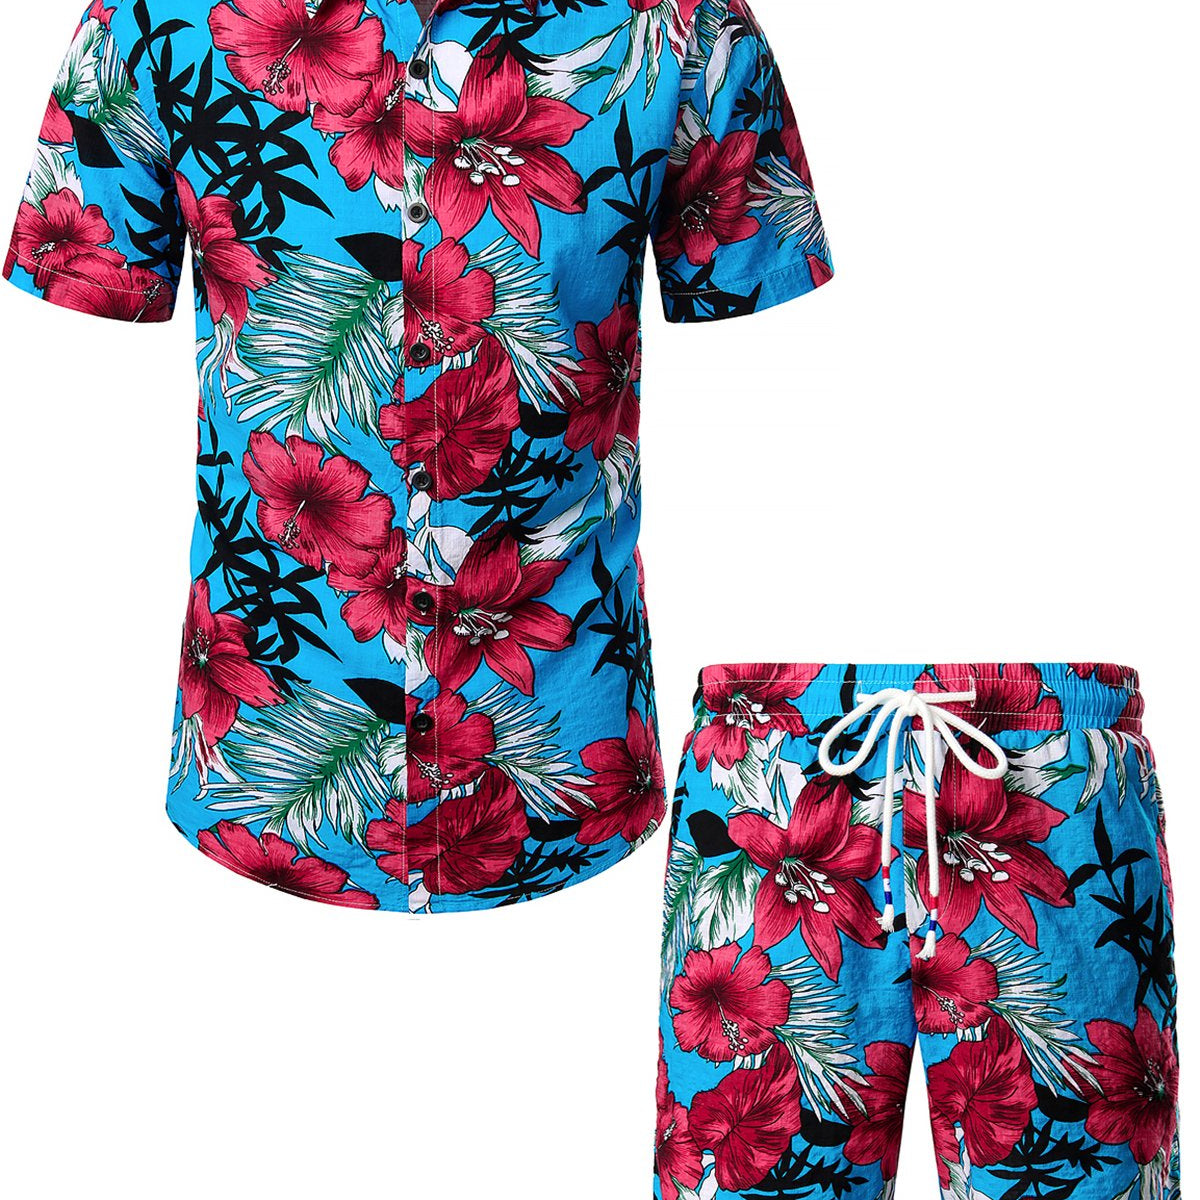 Men's Blue Flower Tropical Hawaiian Shirt & Shorts Set